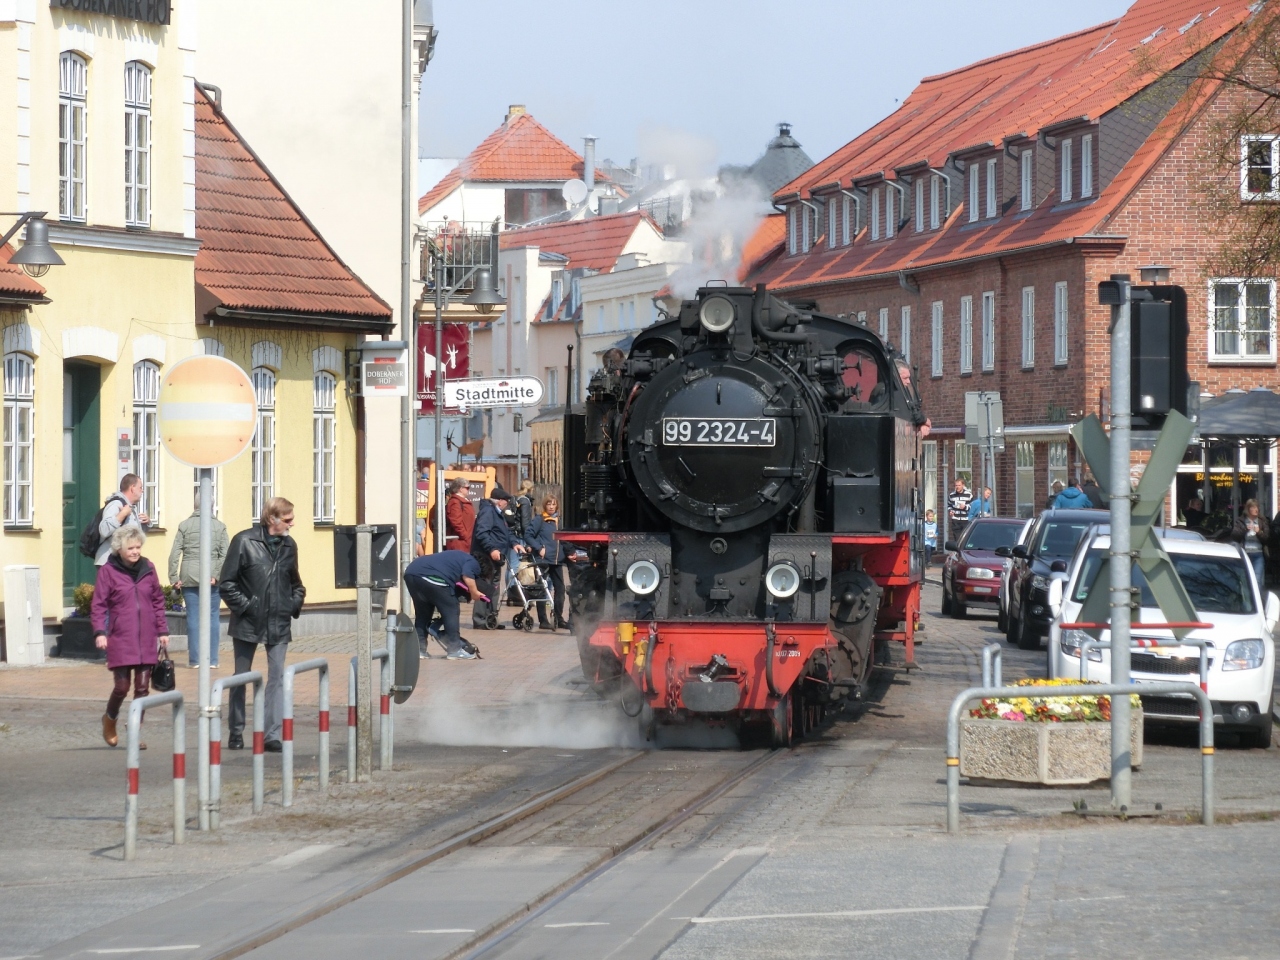 16gw 北ドイツ デンマーク スウェーデン電車の旅 1日目 カッセル ドイツ の旅行記 ブログ By ノムチヨさん フォートラベル